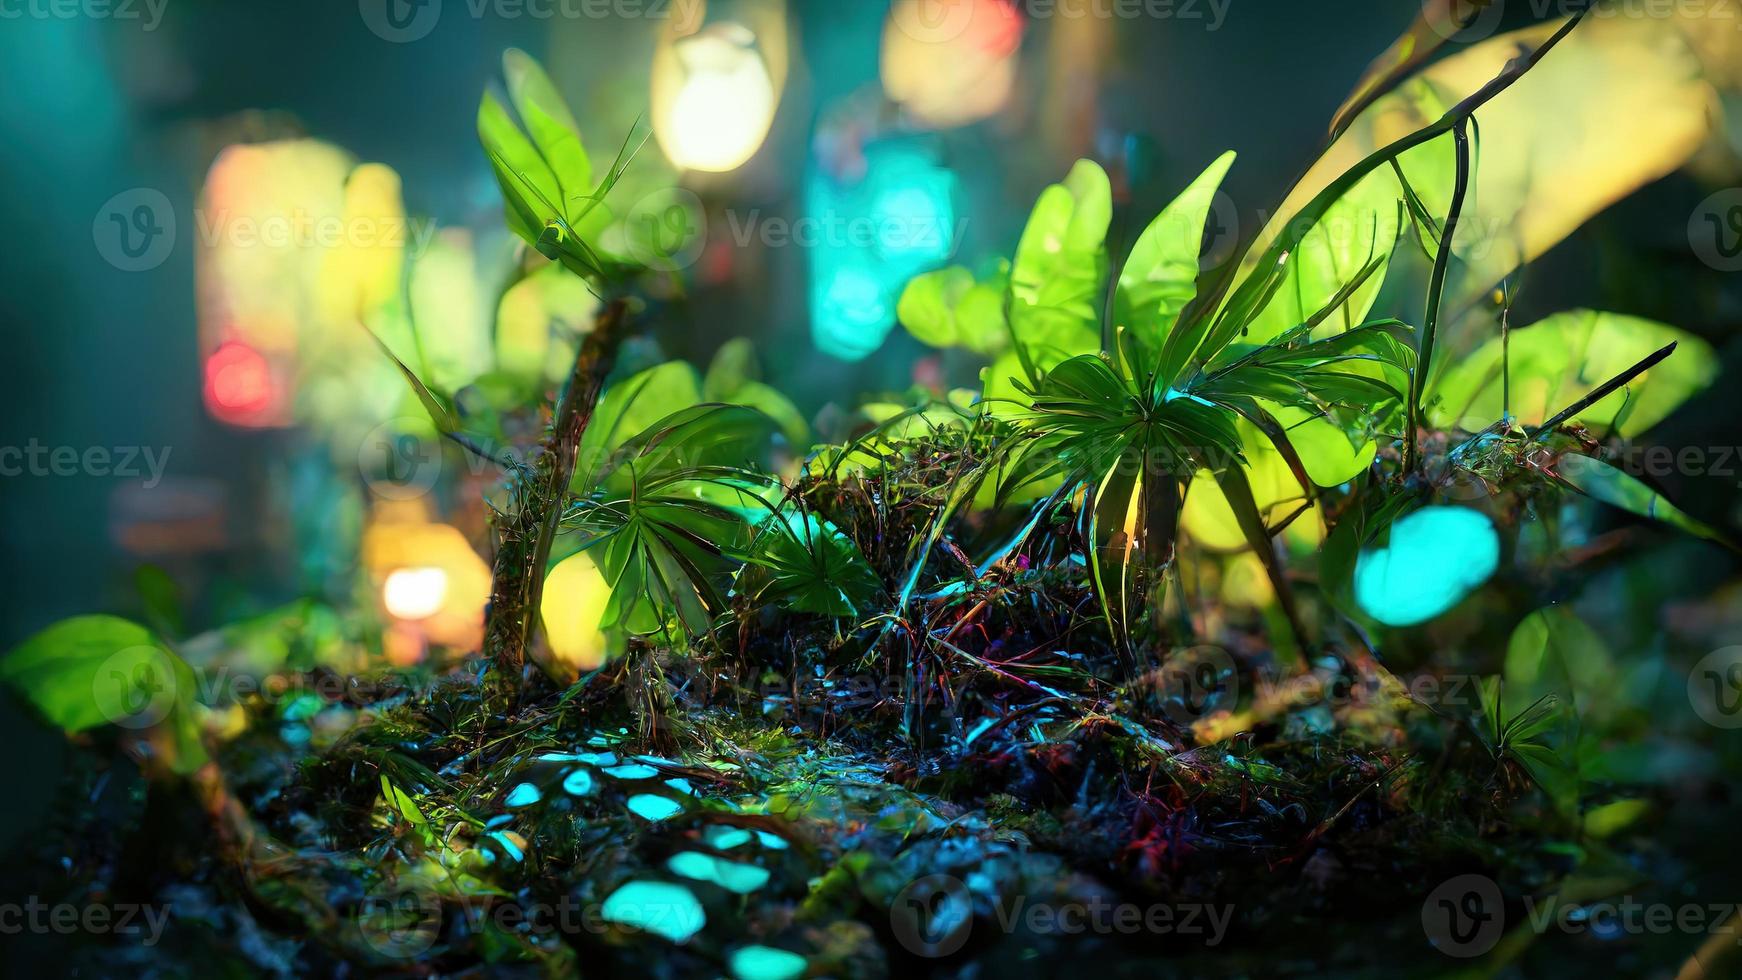 jungle neon night. Abstract illustration art photo